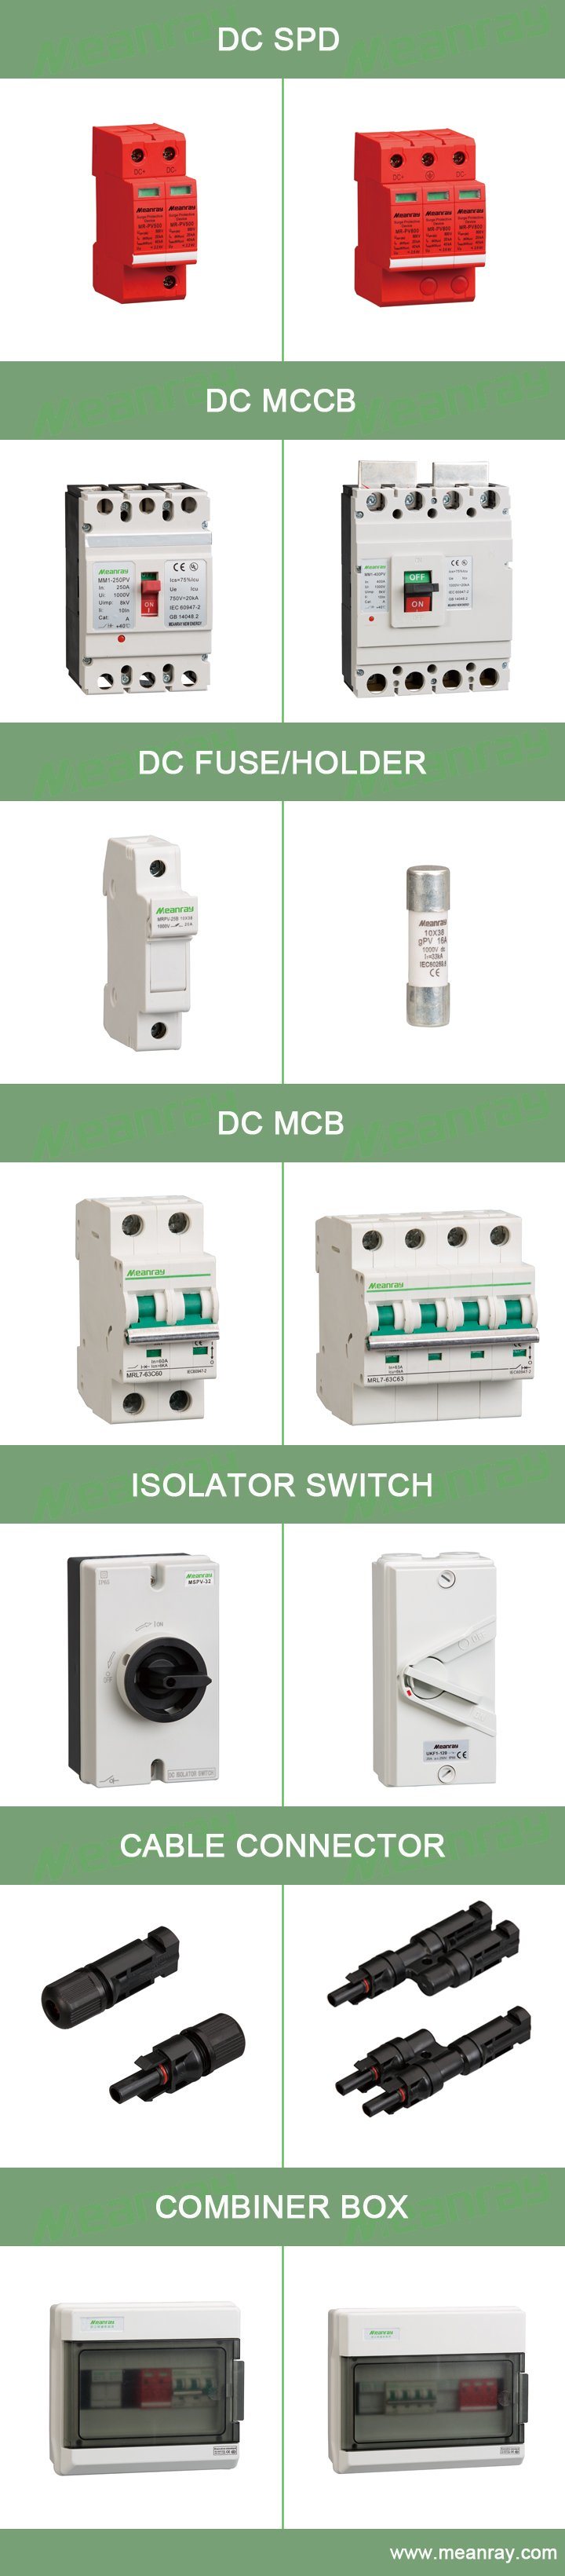 DC MCB DC Mini Circuit Breaker 800V 1000V 1200V Solar 4p MCB